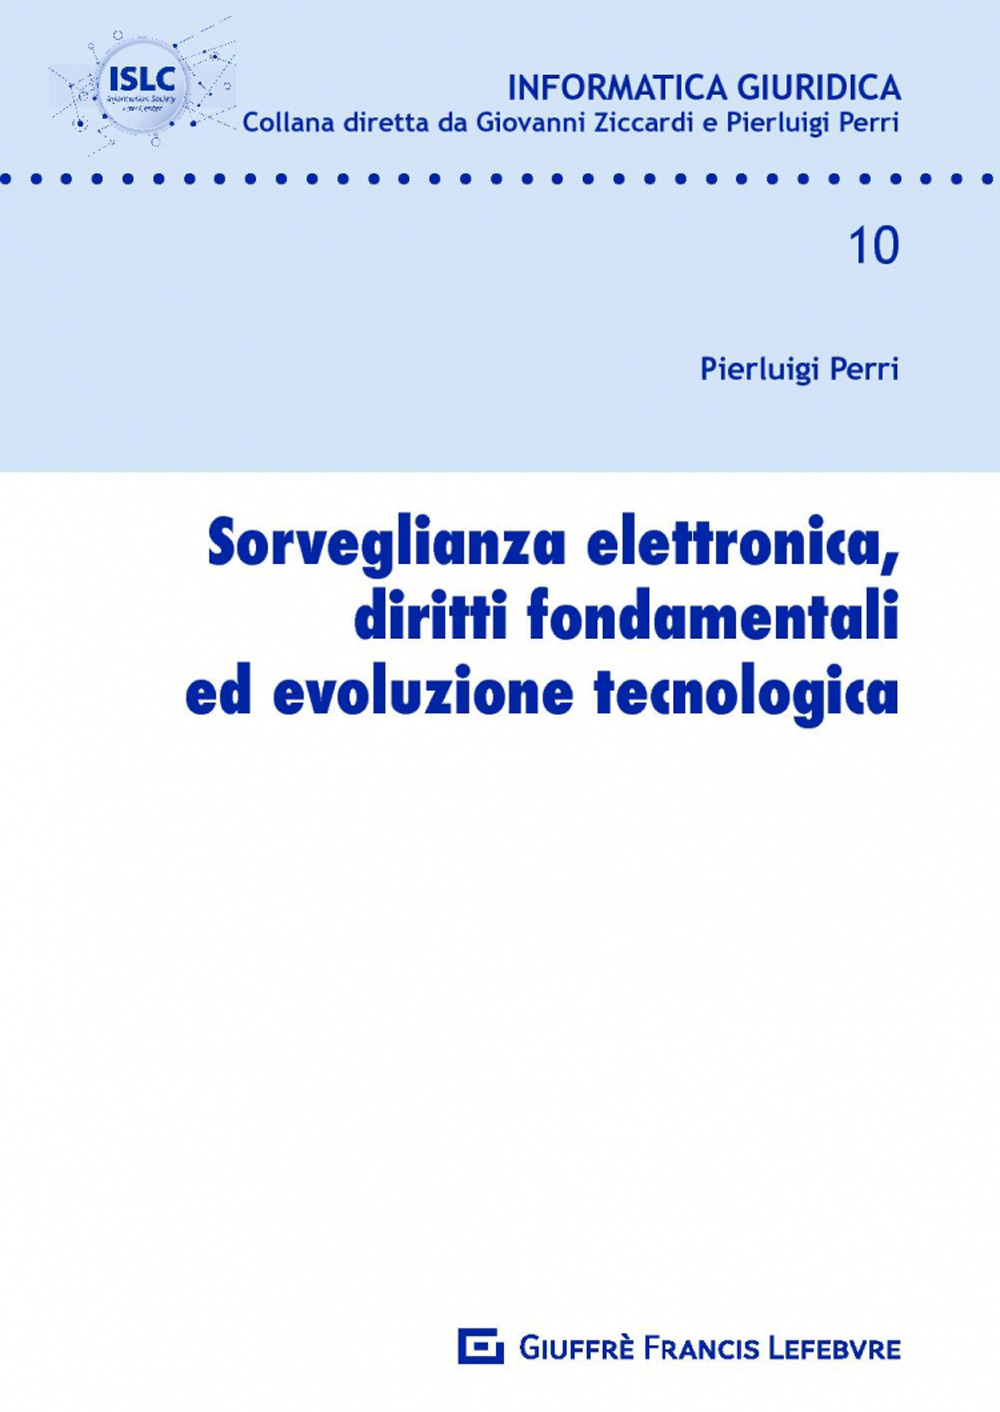 Image of Sorveglianza elettronica, diritti fondamentali ed evoluzione tecnologica